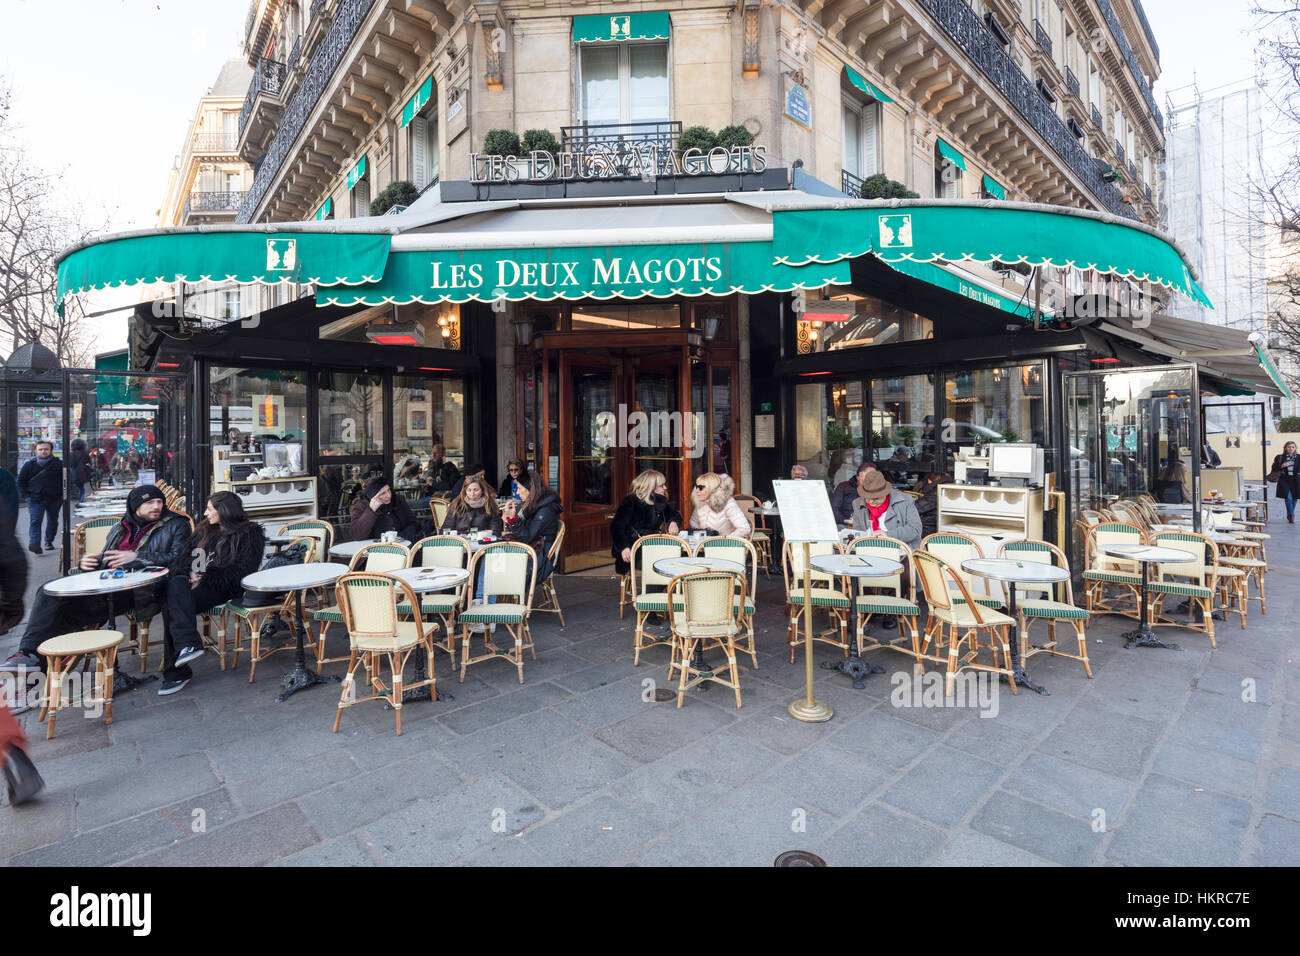 Les Deux Magots, café restaurant, Paris, France Banque D'Images